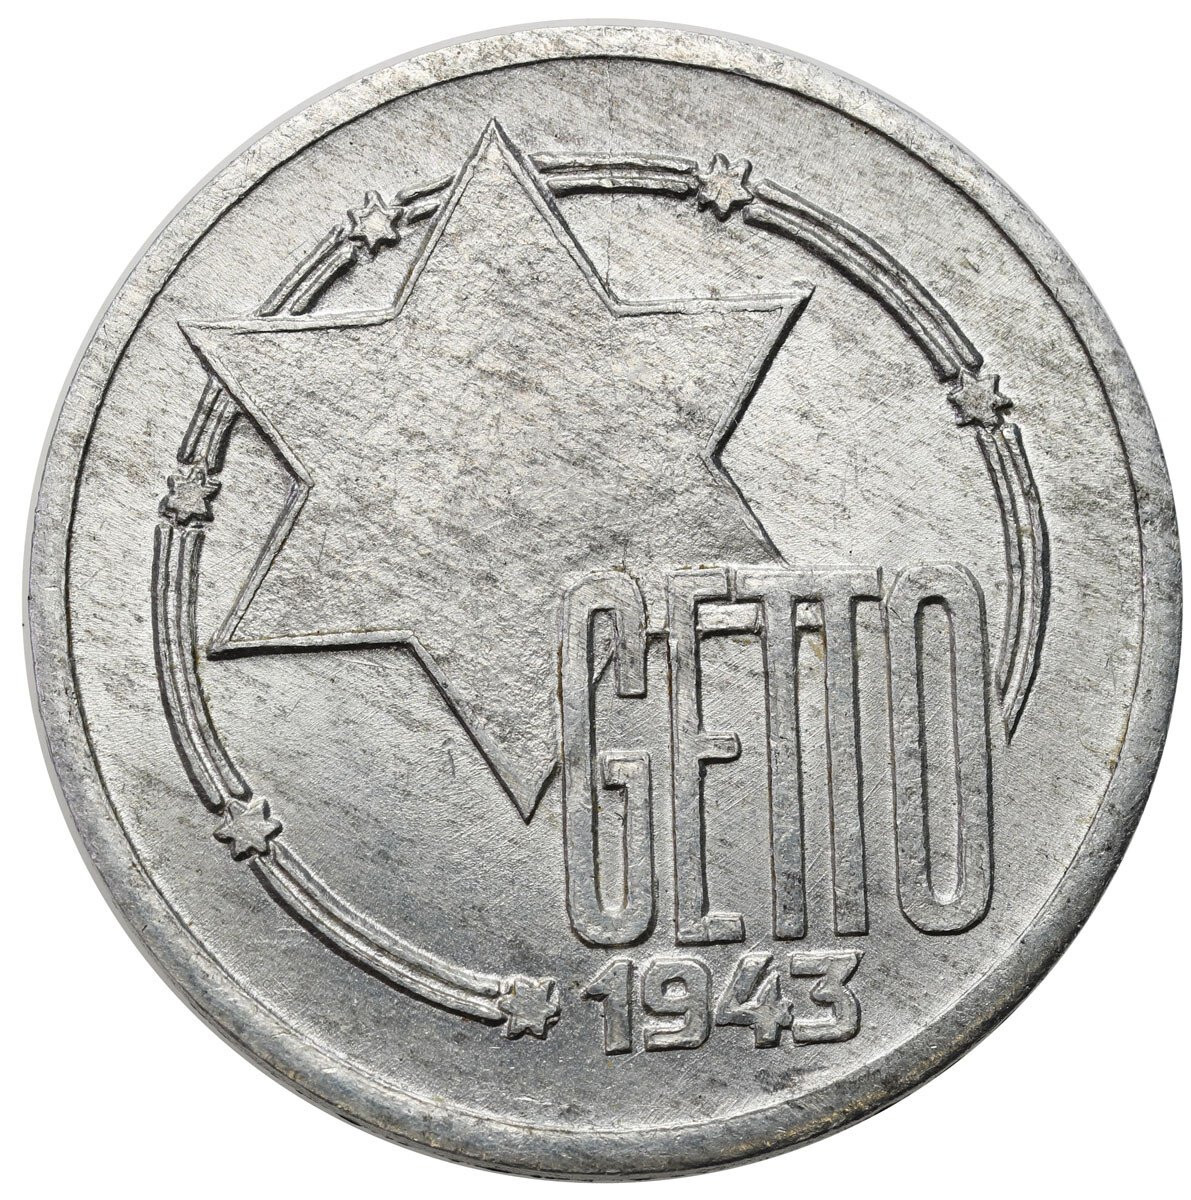 Getto Łódź. 10 Marek 1943 aluminium - PIĘKNE